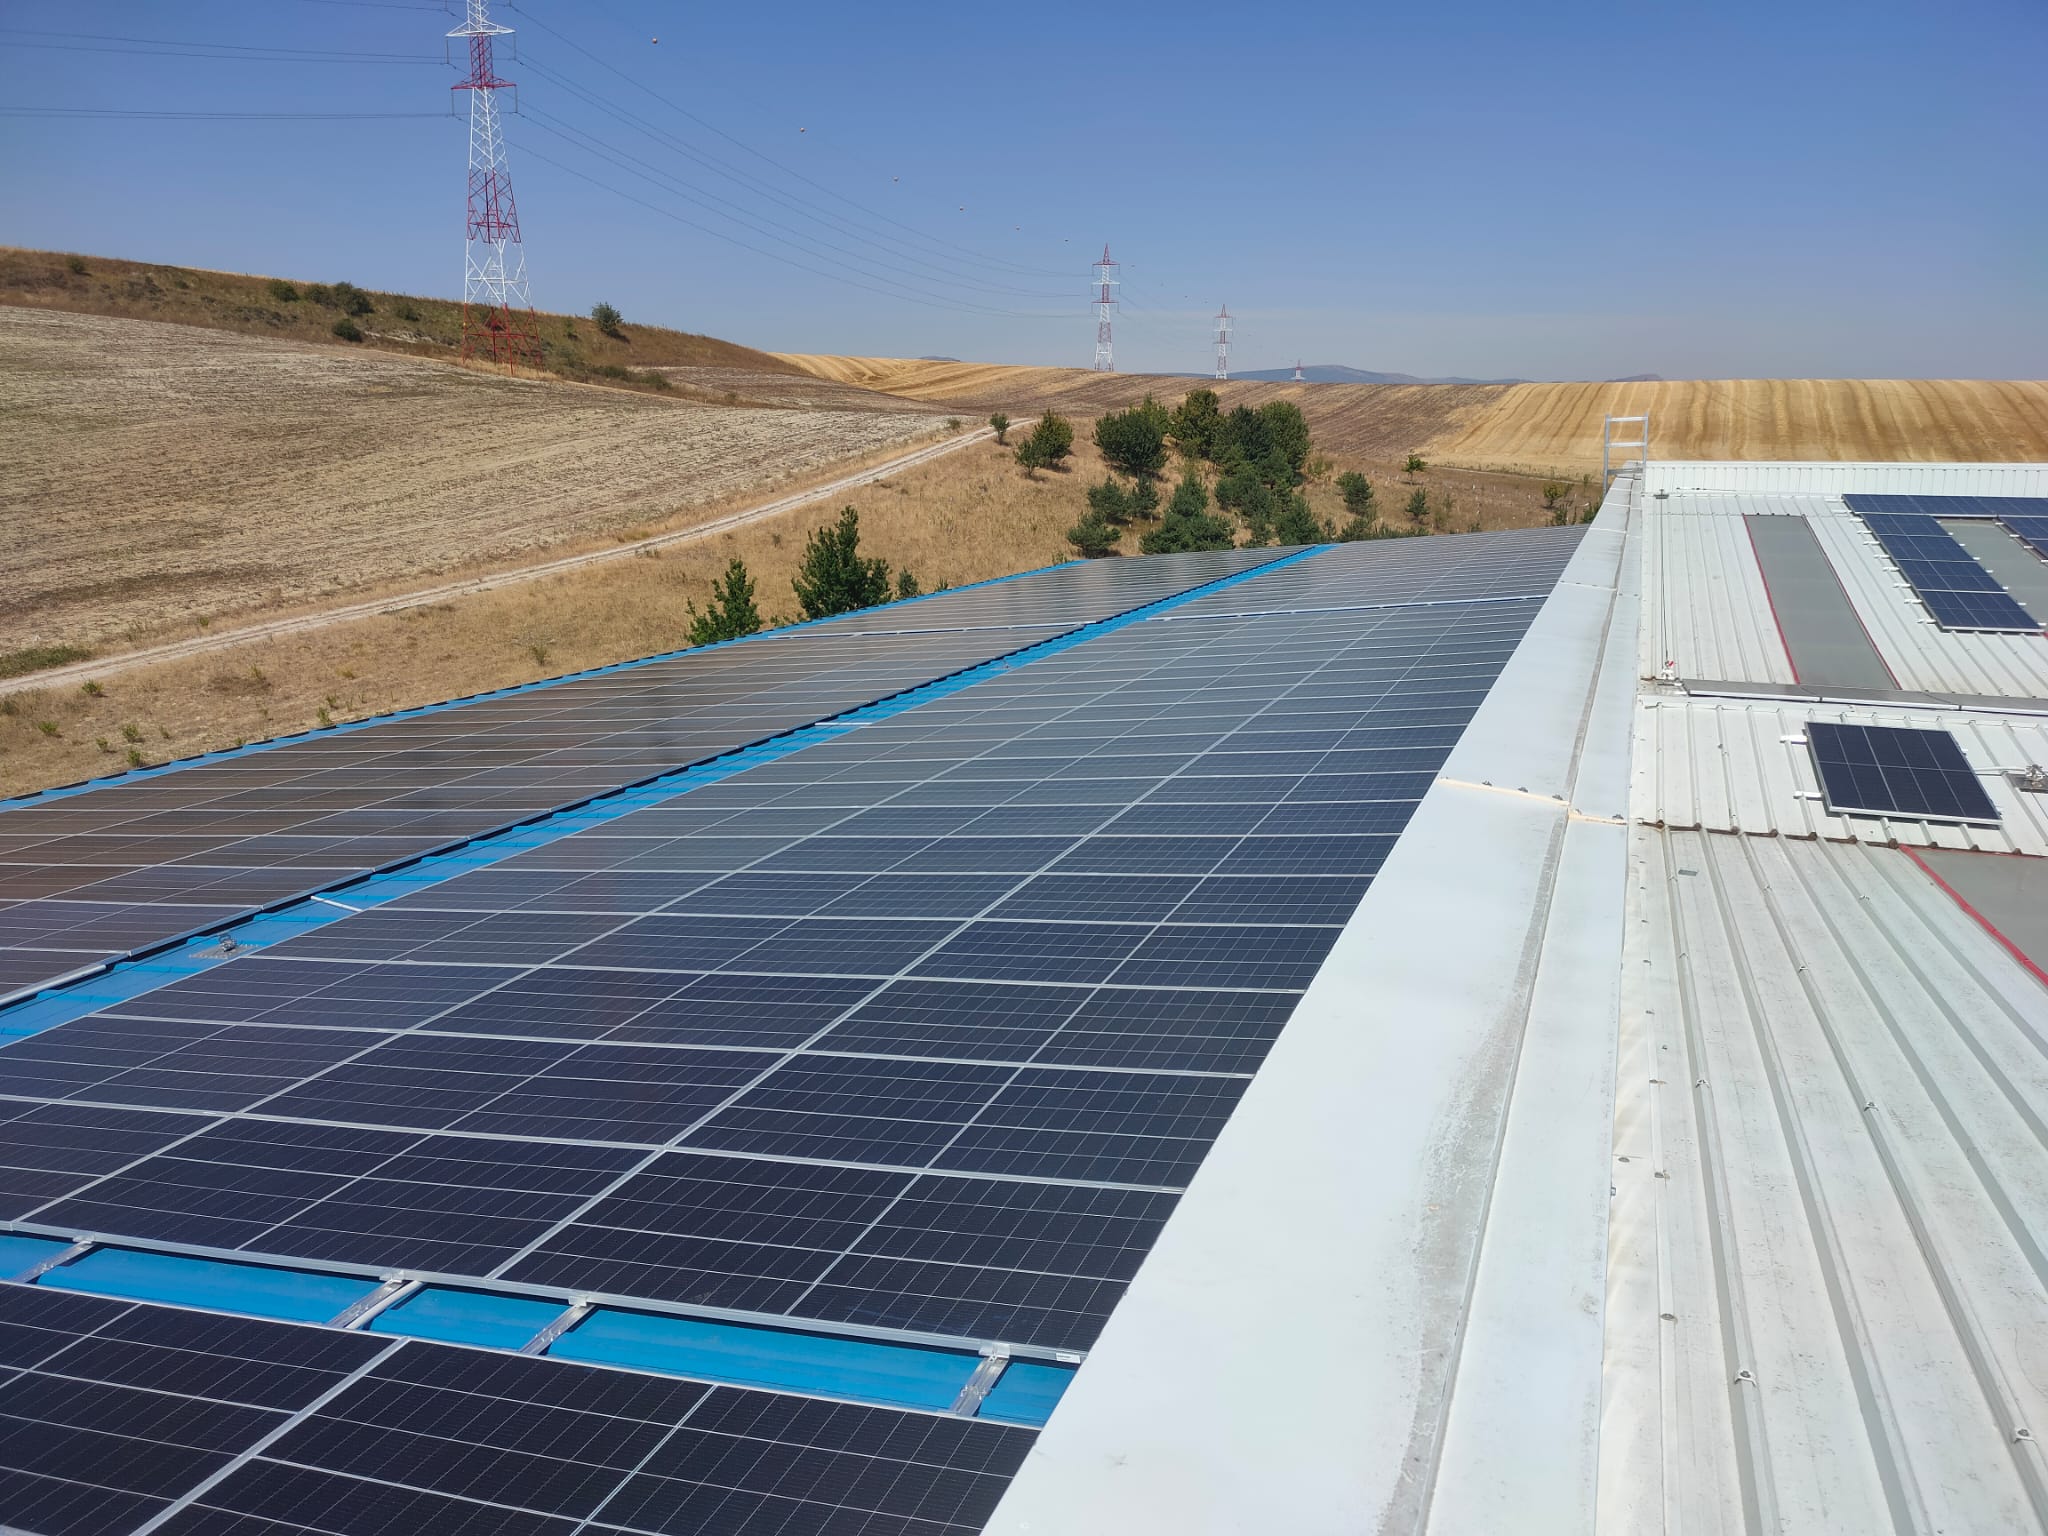 Jamatec lidera la revolución del almacenamiento fotovoltaico en España con la mayor instalación en una empresa hasta la fecha.